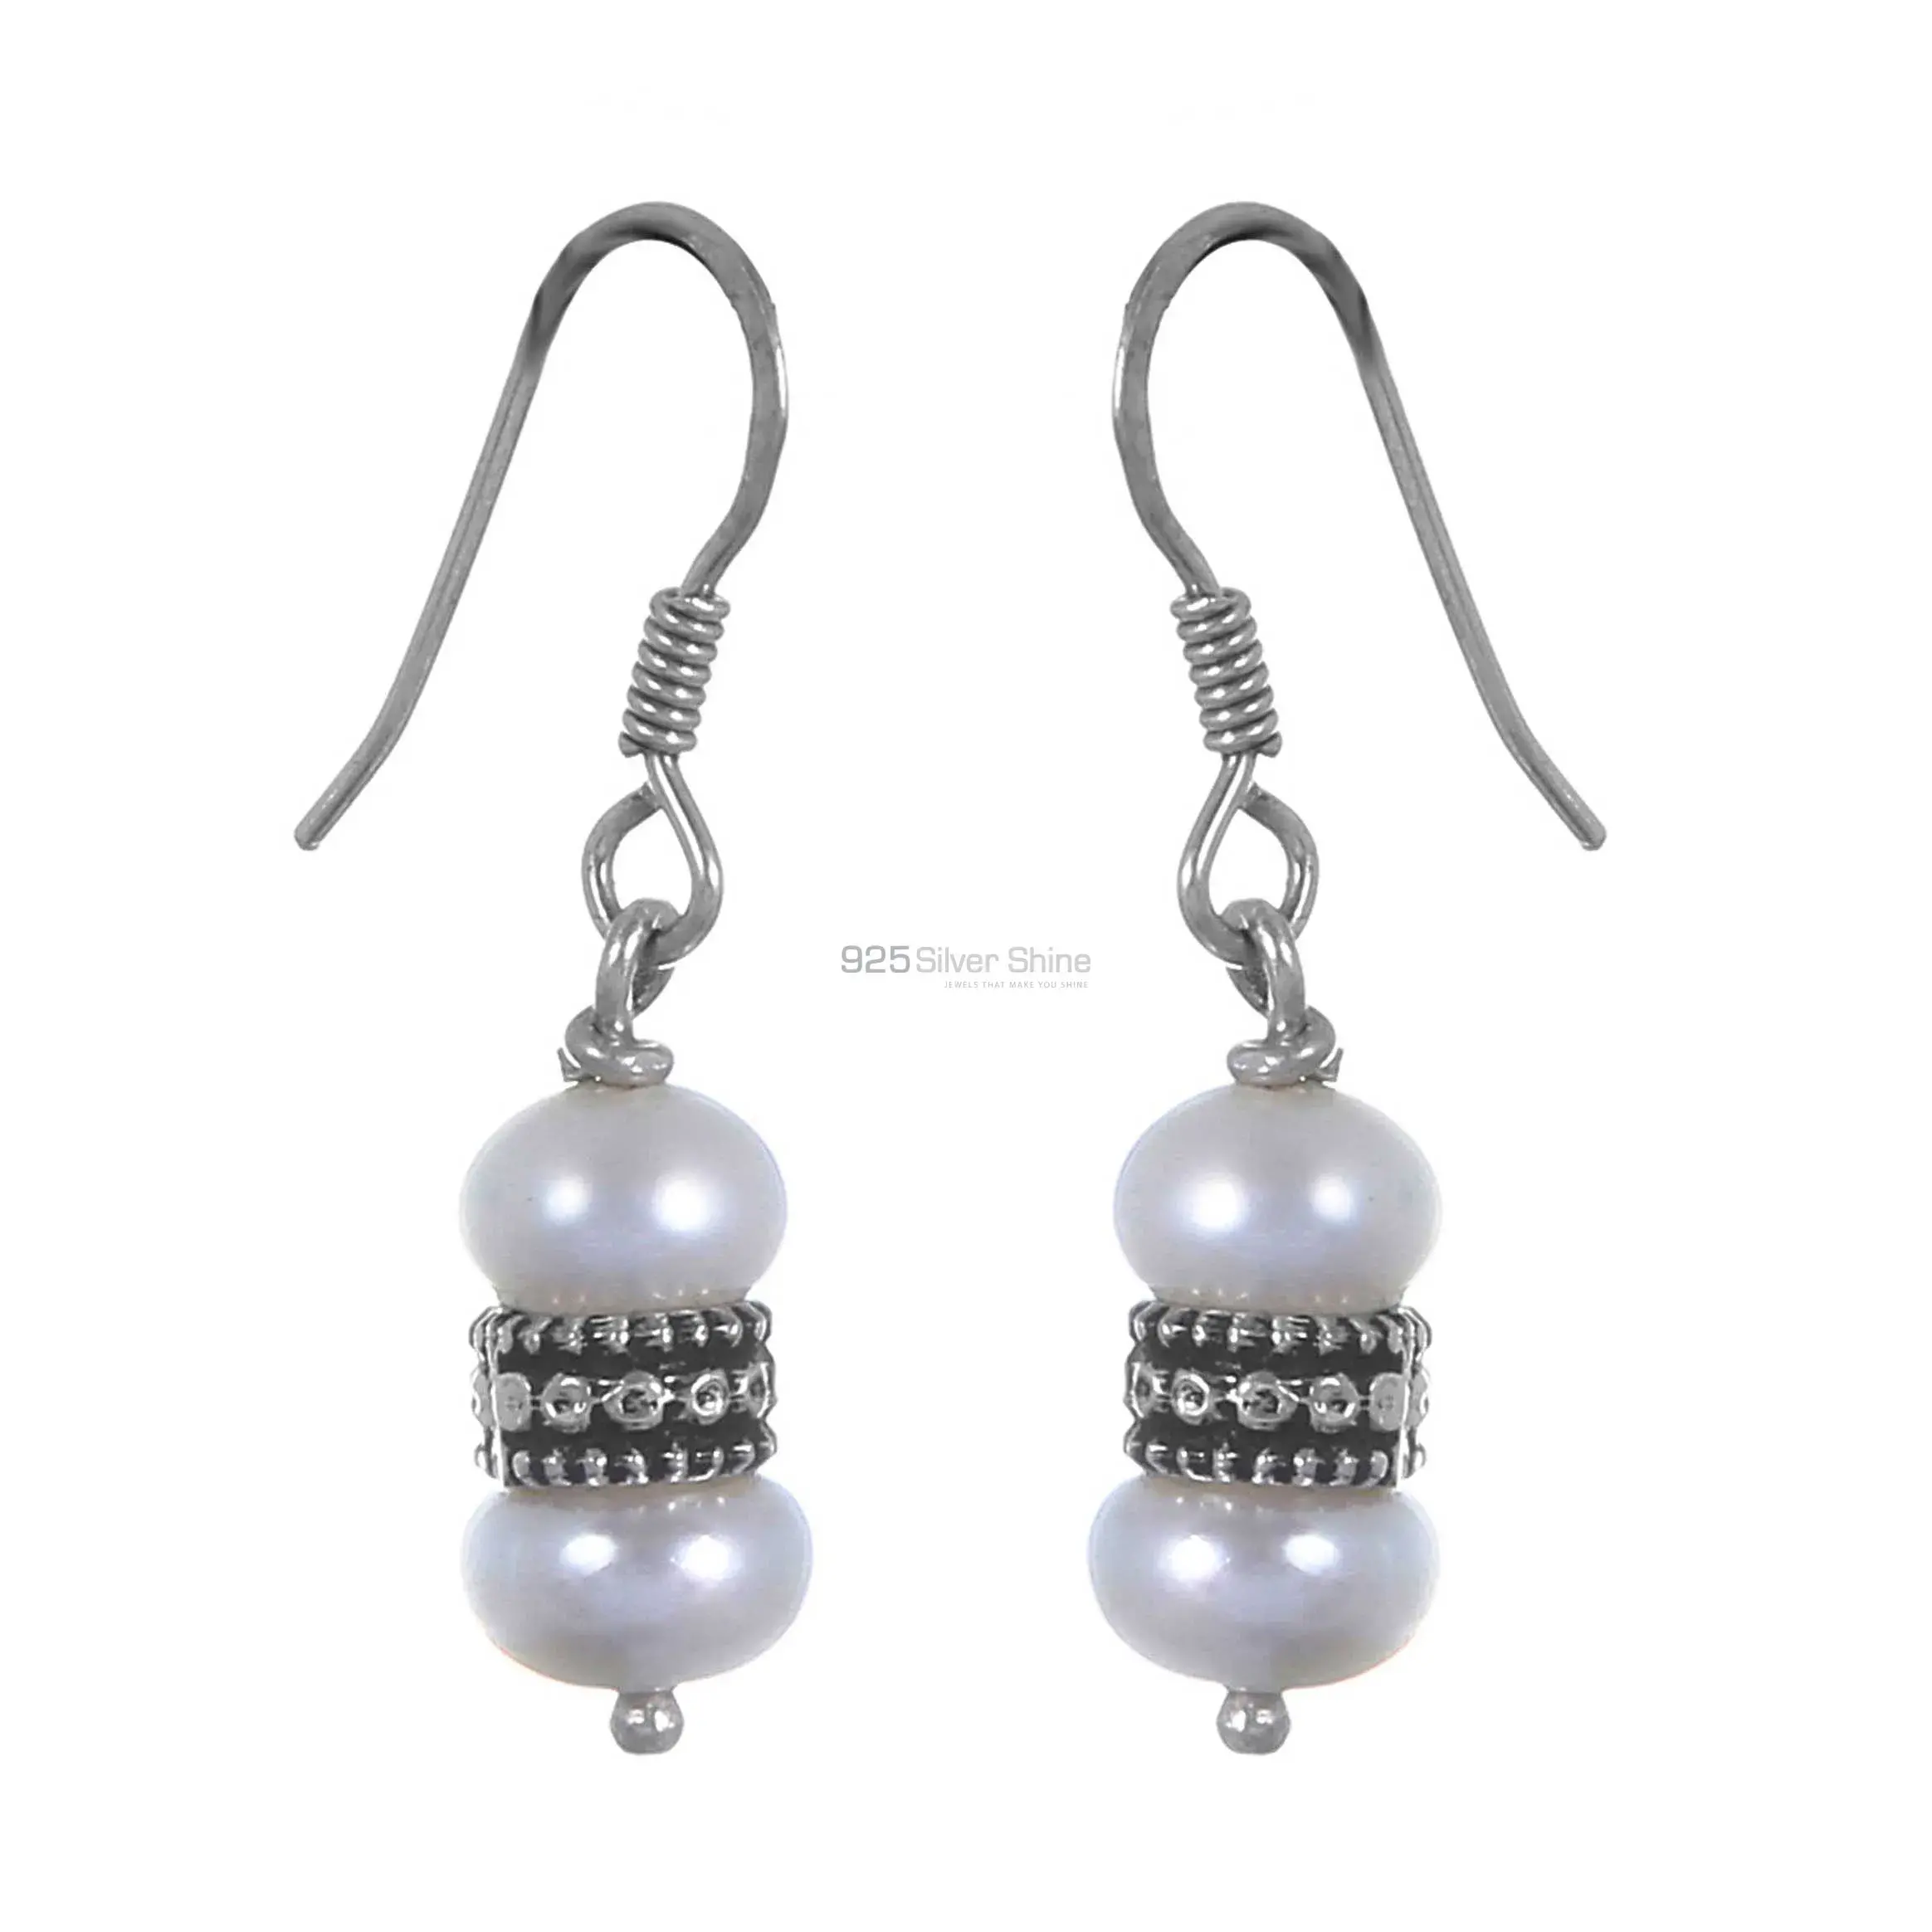 Beautiful 925 Sterling Silver Handmade Earrings Suppliers In Pearl Gemstone Jewelry 925SE293